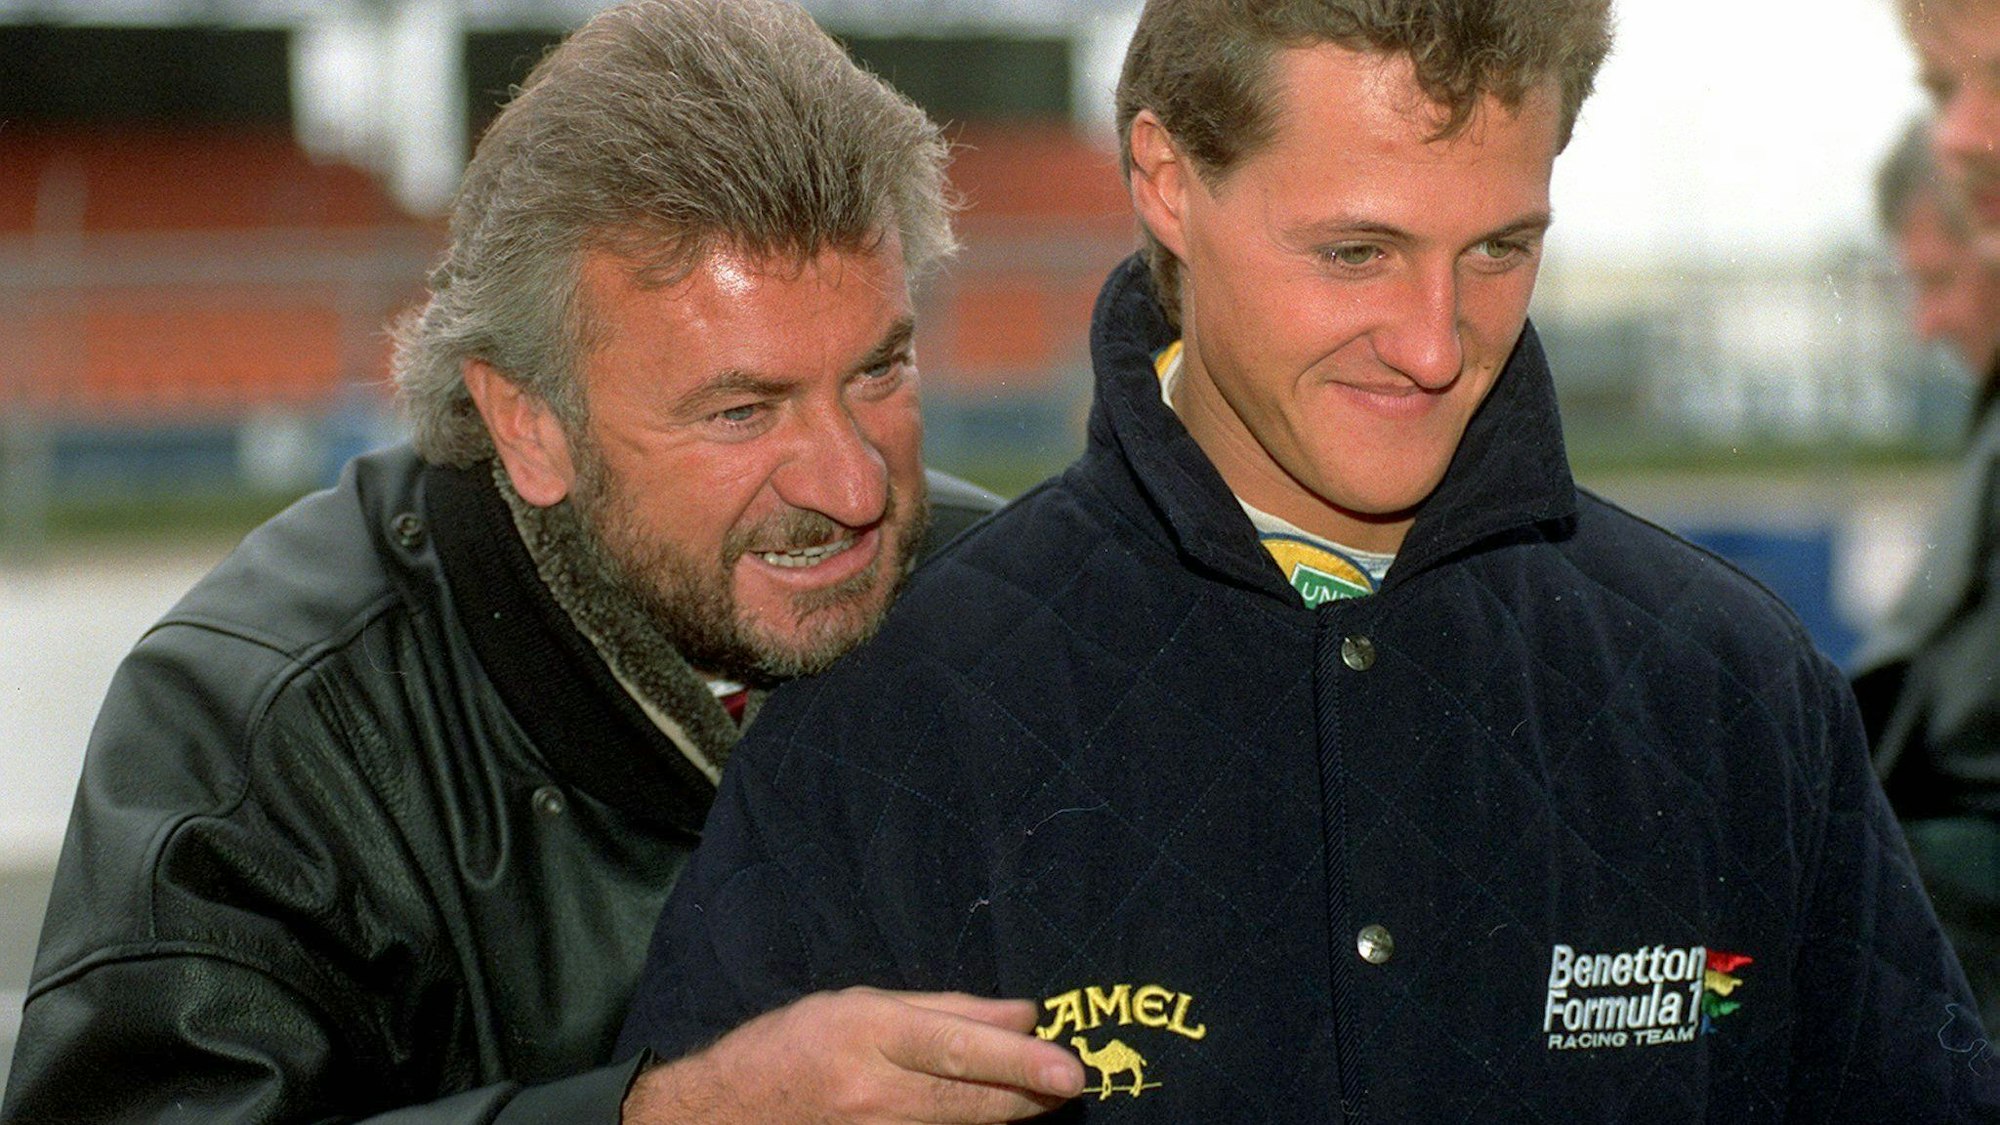 Schumacher-Manager Willi Weber ist auf dem Archivbild von 1995 im Gespräch mit Formel 1-Pilot Michael Schumacher.